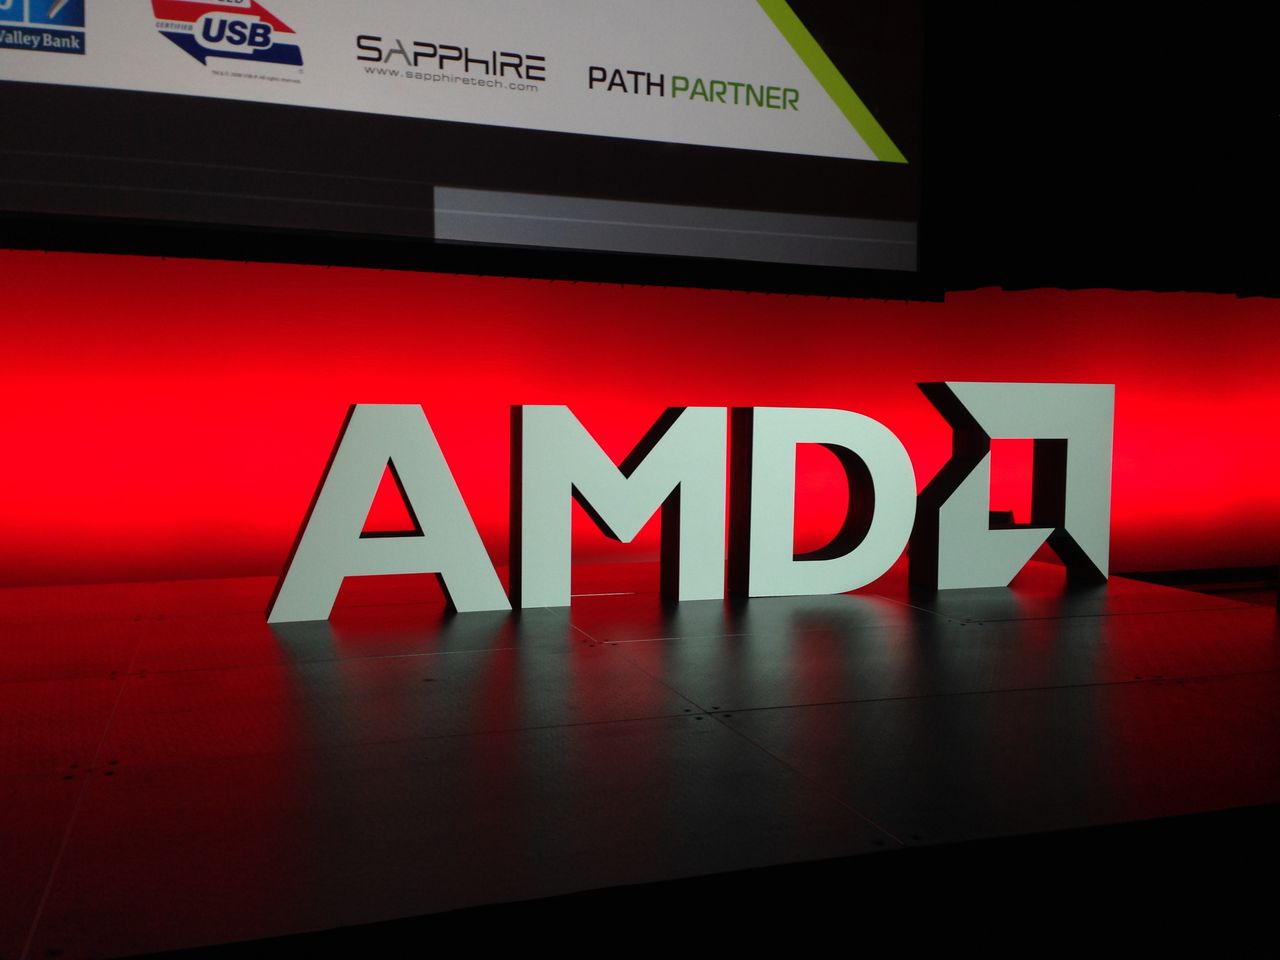 APU "Kaveri" od AMD już w styczniu na desktopach (plus garść innych nowości)